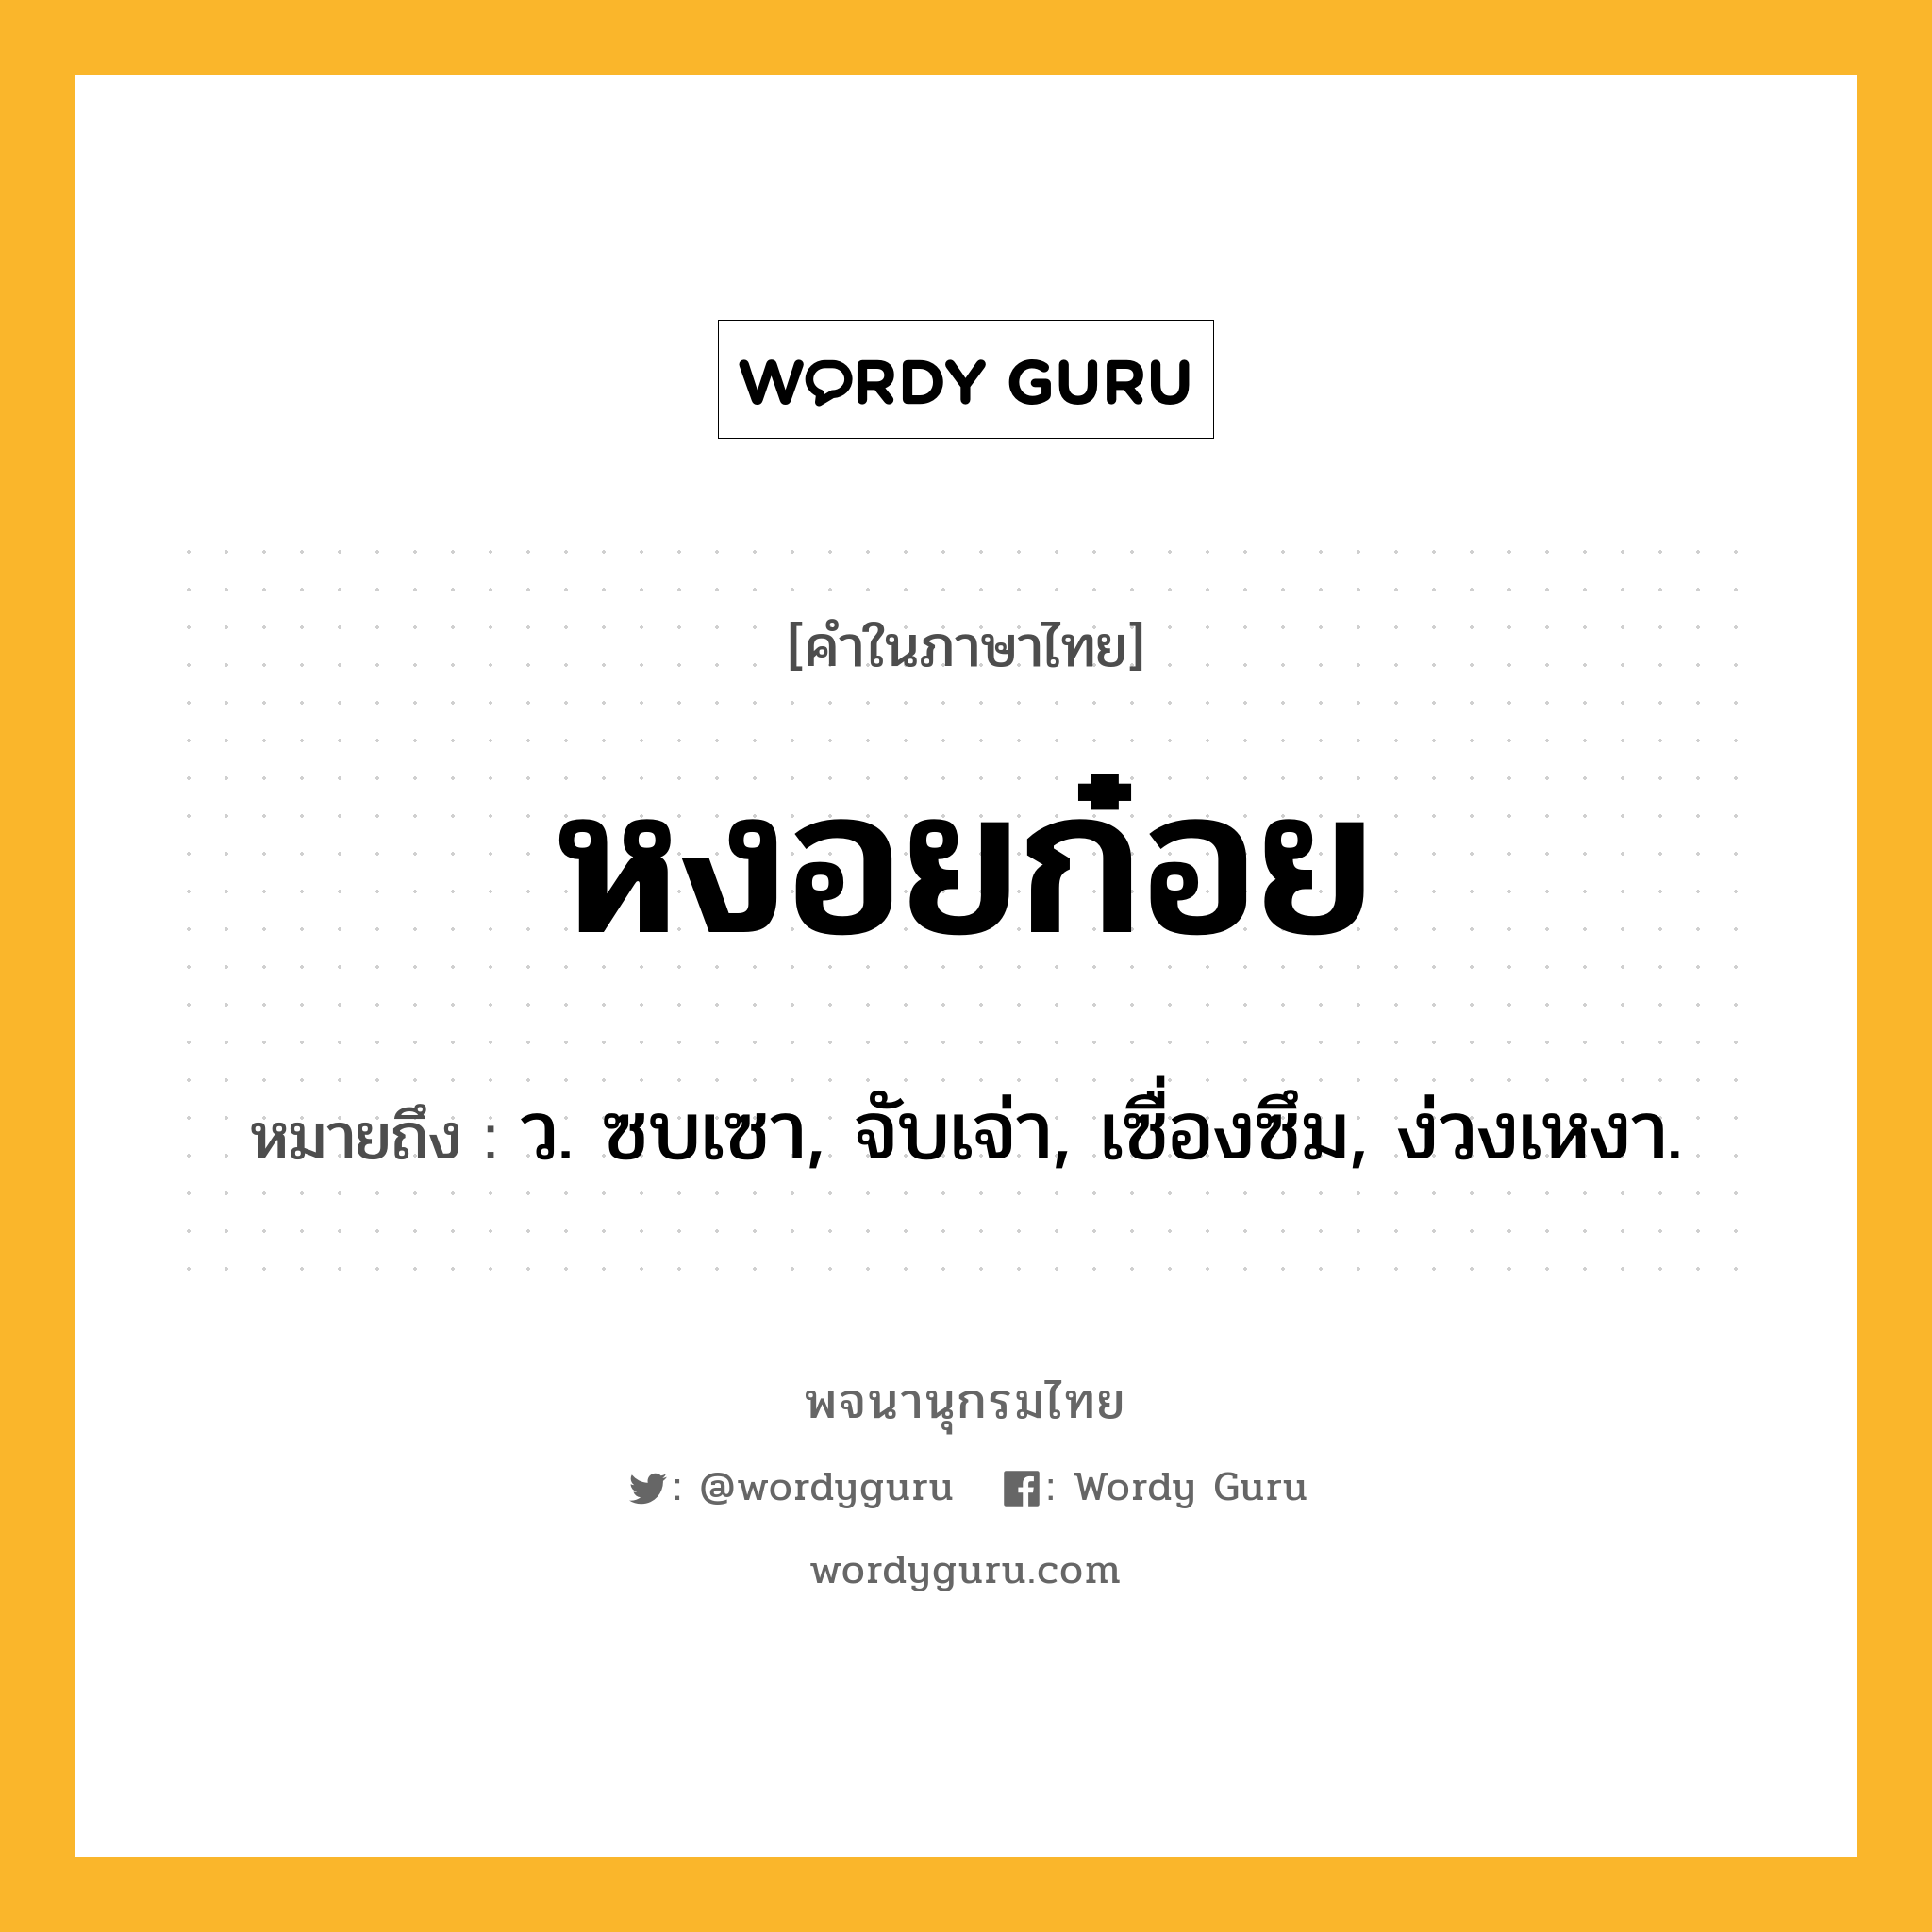 หงอยก๋อย ความหมาย หมายถึงอะไร?, คำในภาษาไทย หงอยก๋อย หมายถึง ว. ซบเซา, จับเจ่า, เซื่องซึม, ง่วงเหงา.